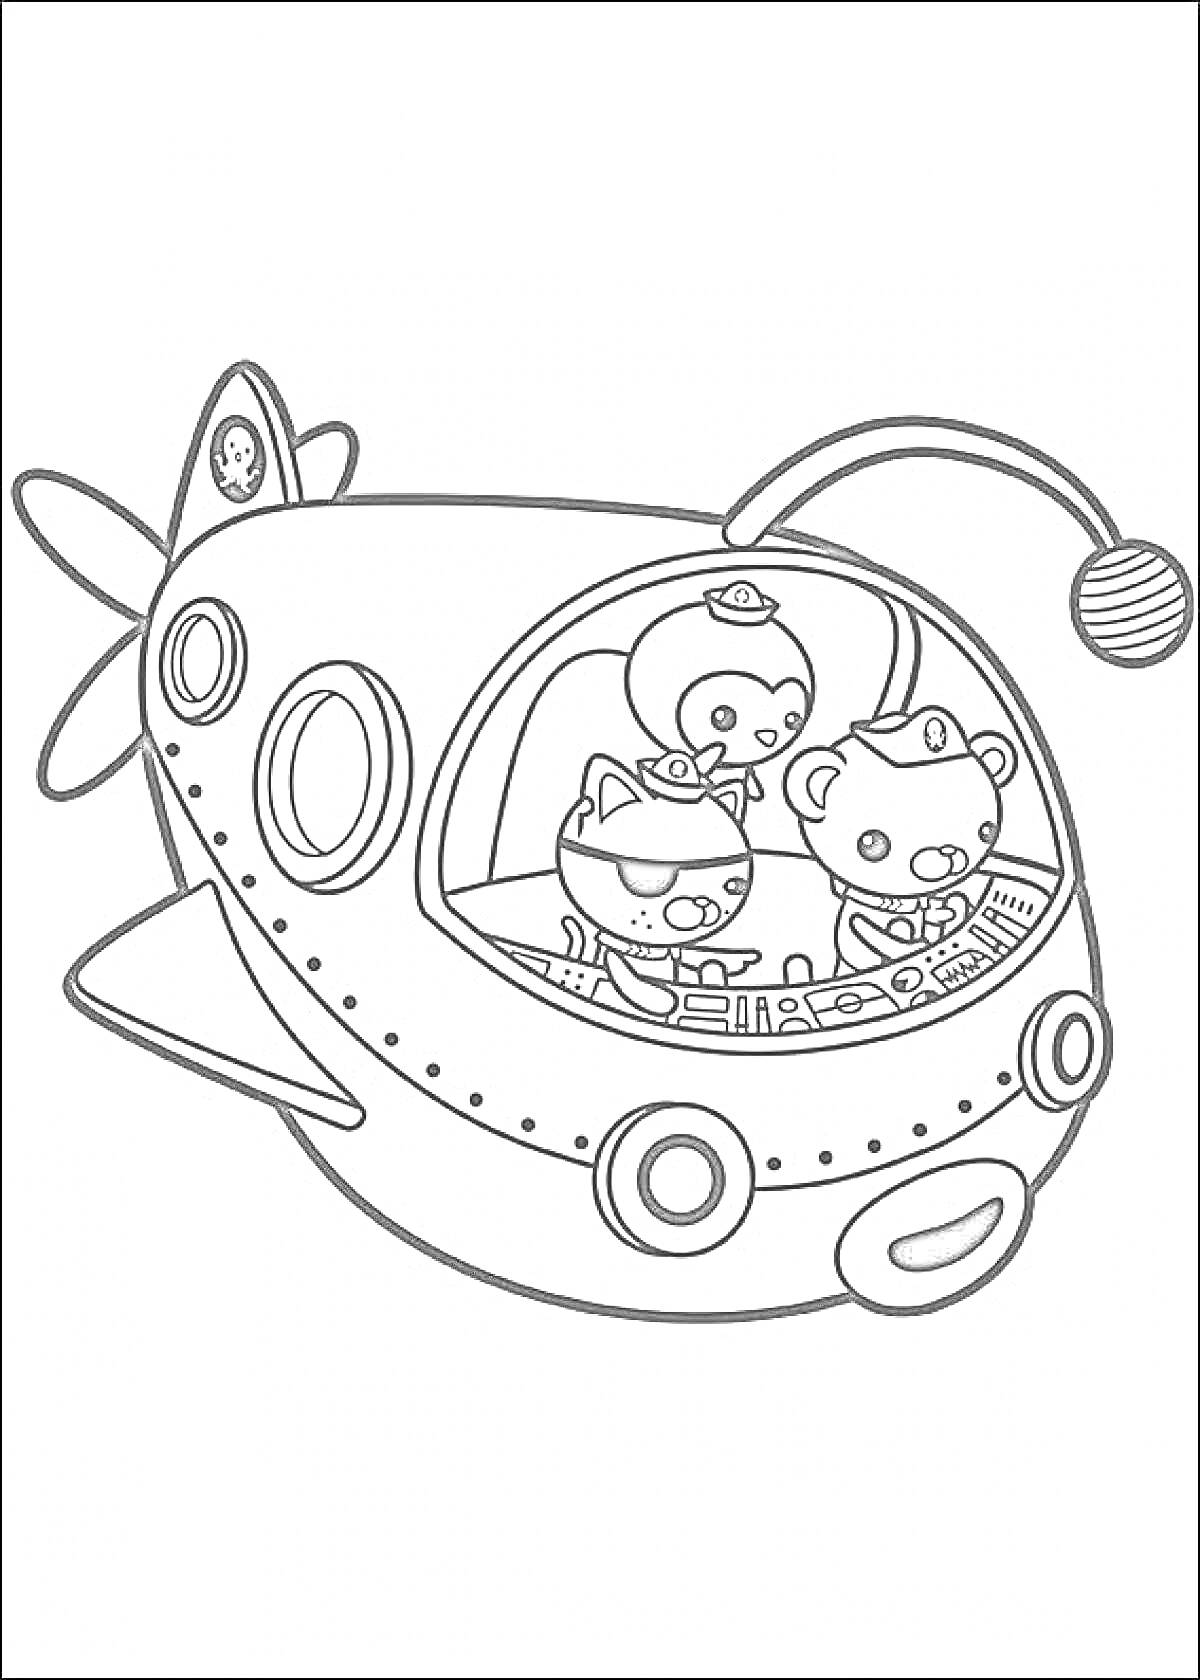 Октонавты в подводной лодке с тремя персонажами в кабине